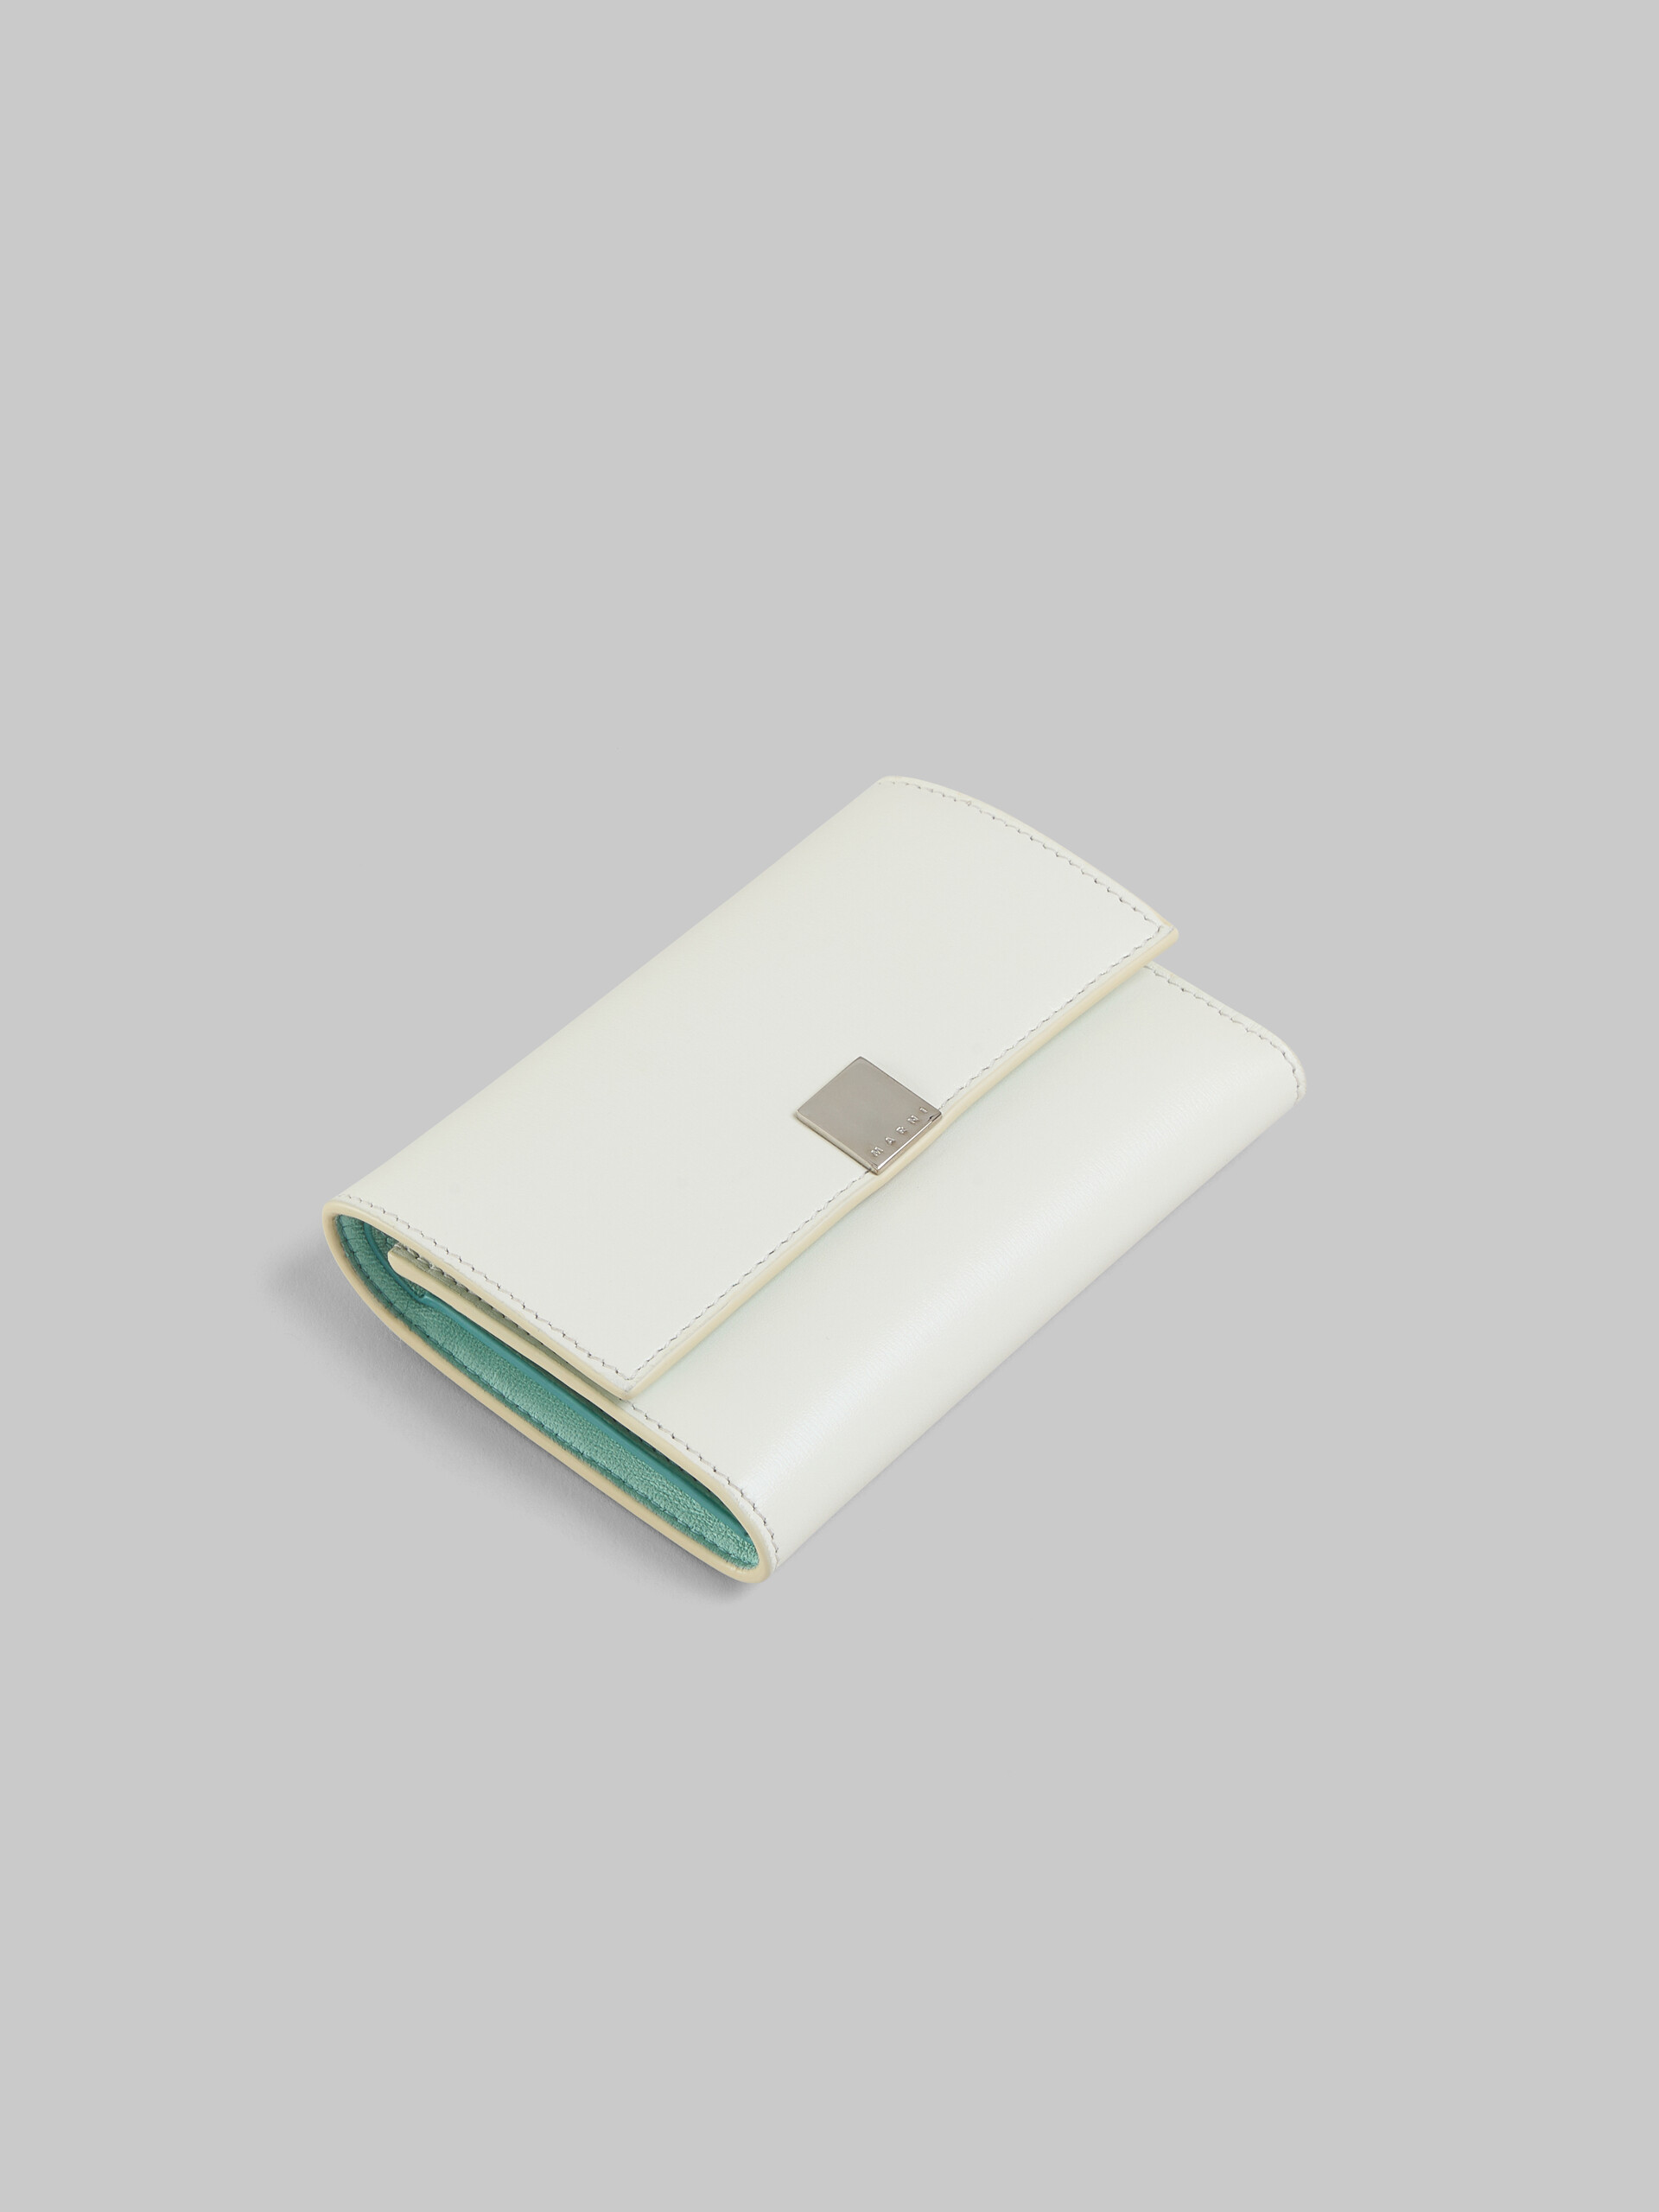 ブラック レザー製 Prisma 三つ折りウォレット、メタルプレート付き - 財布 - Image 5